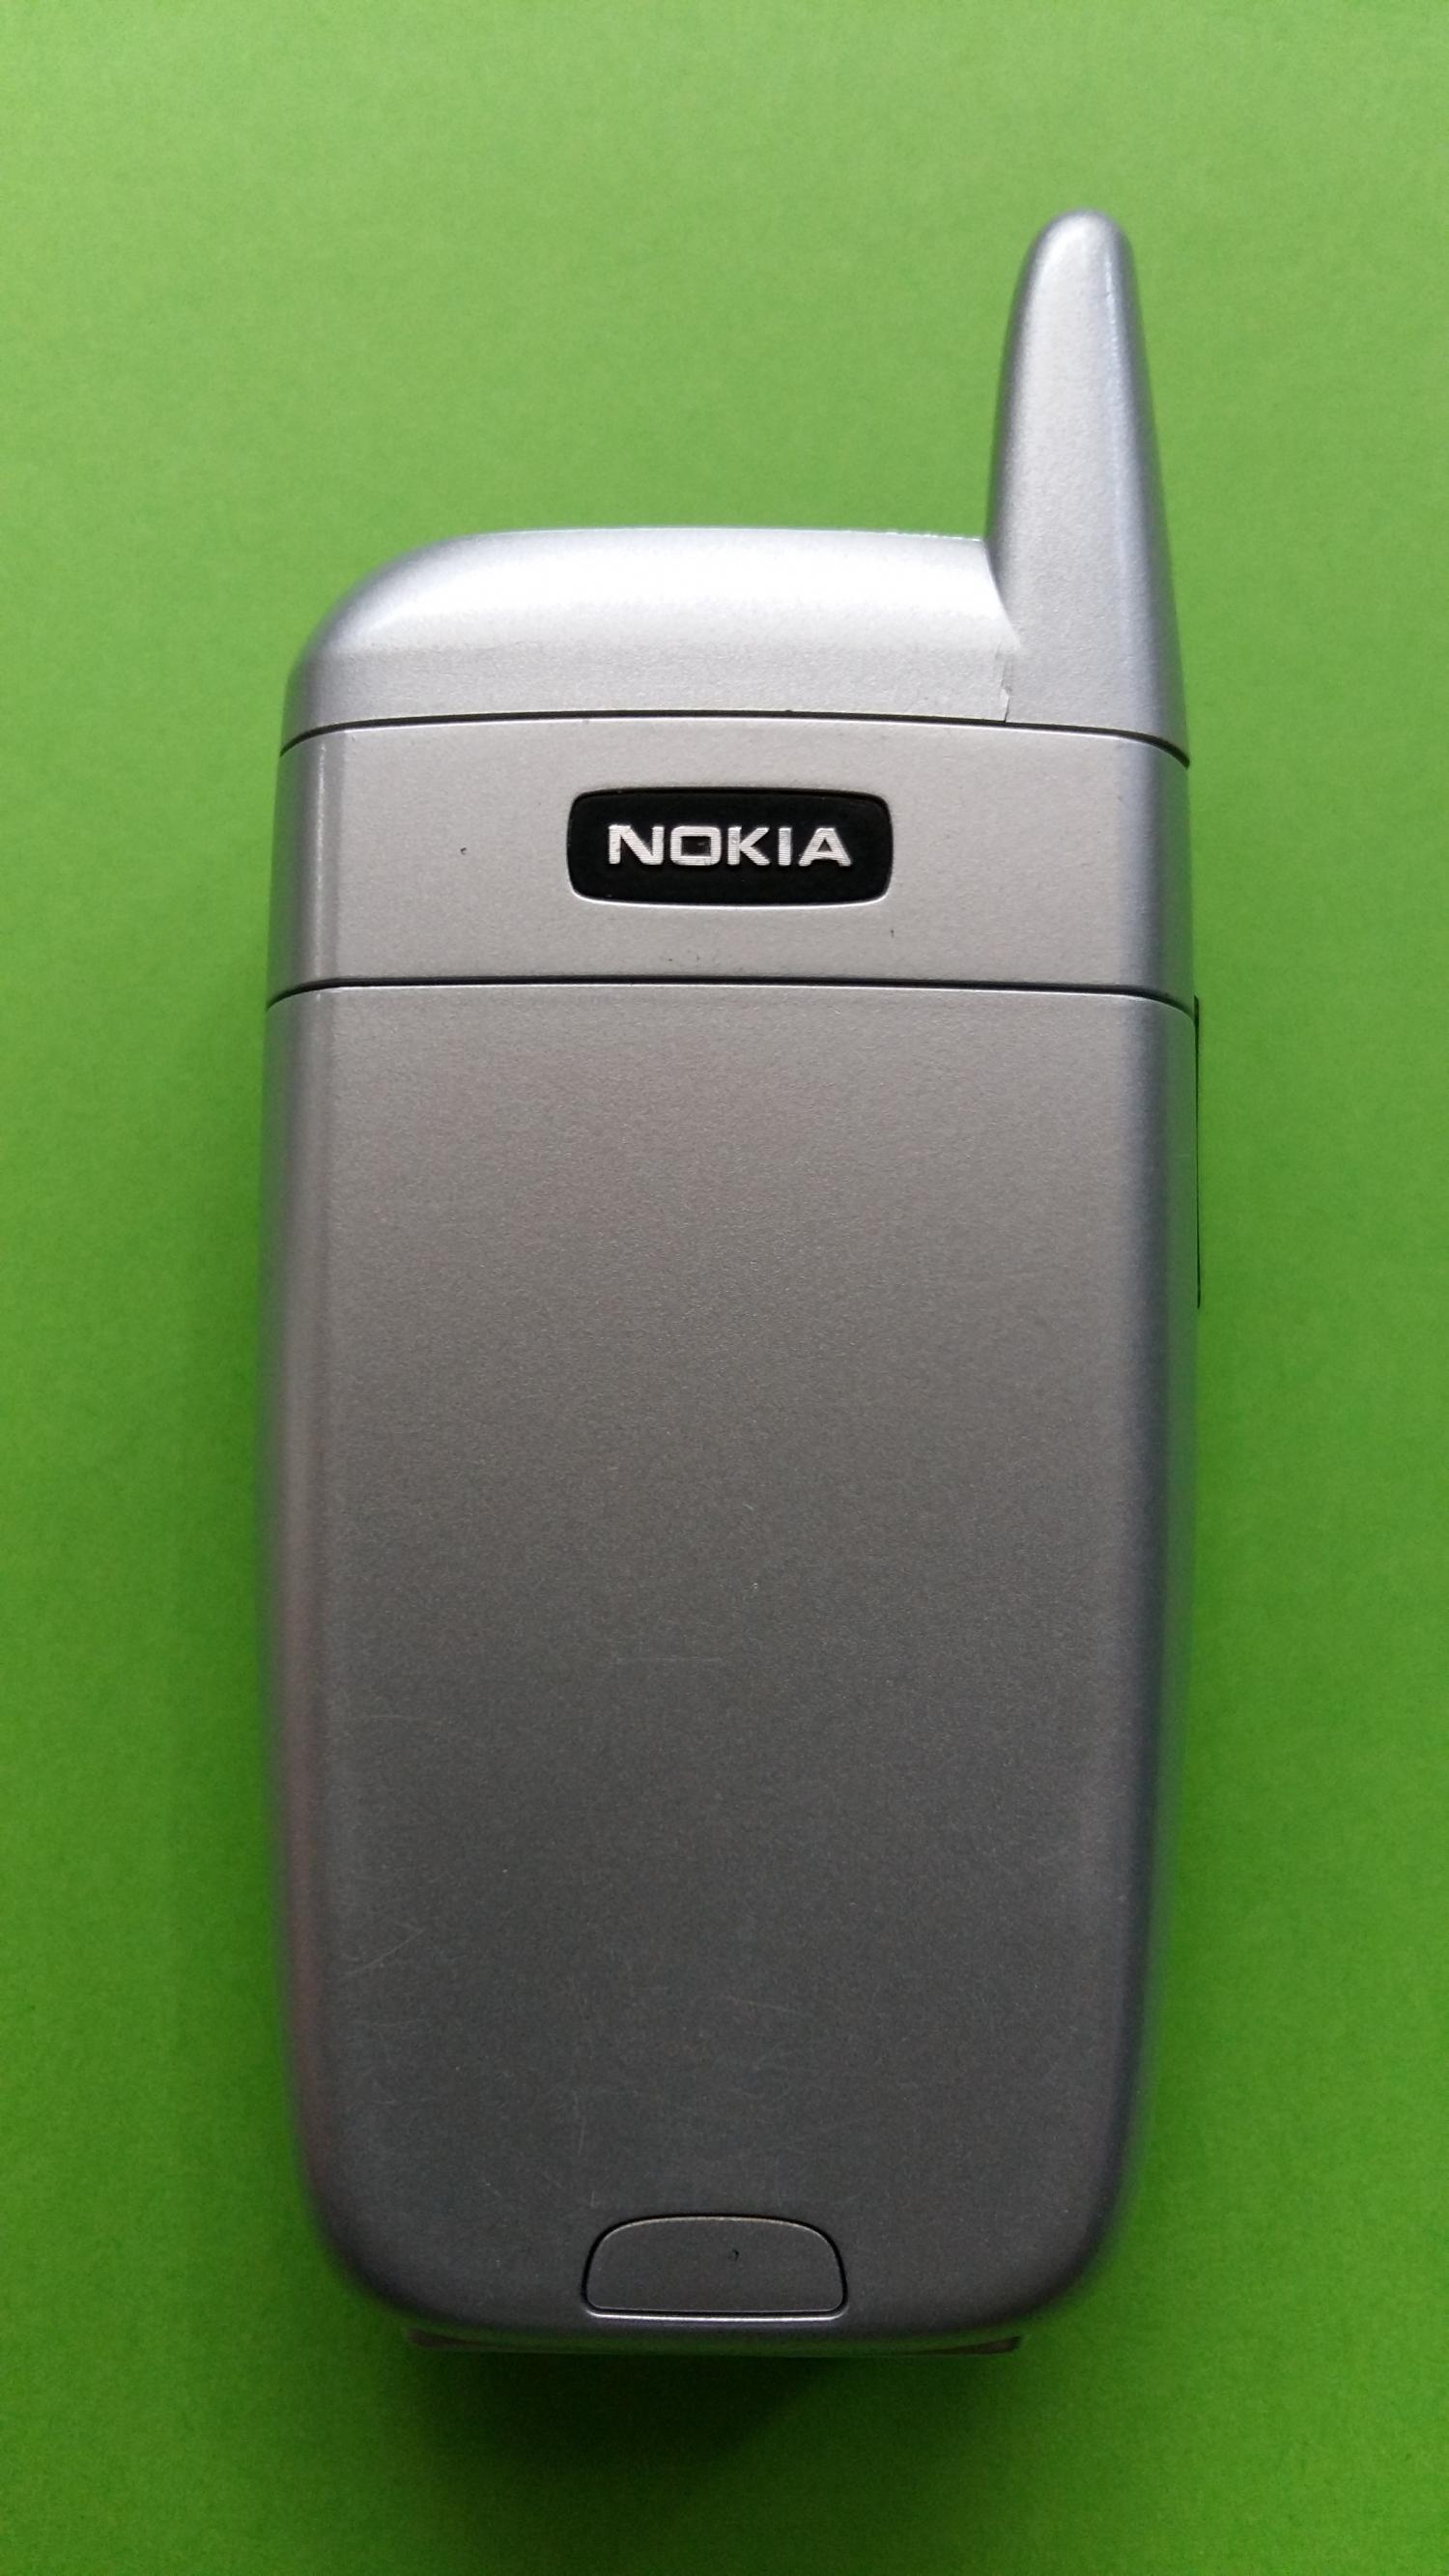 image-7323627-Nokia 6101 (5)5.jpg?1598538612480